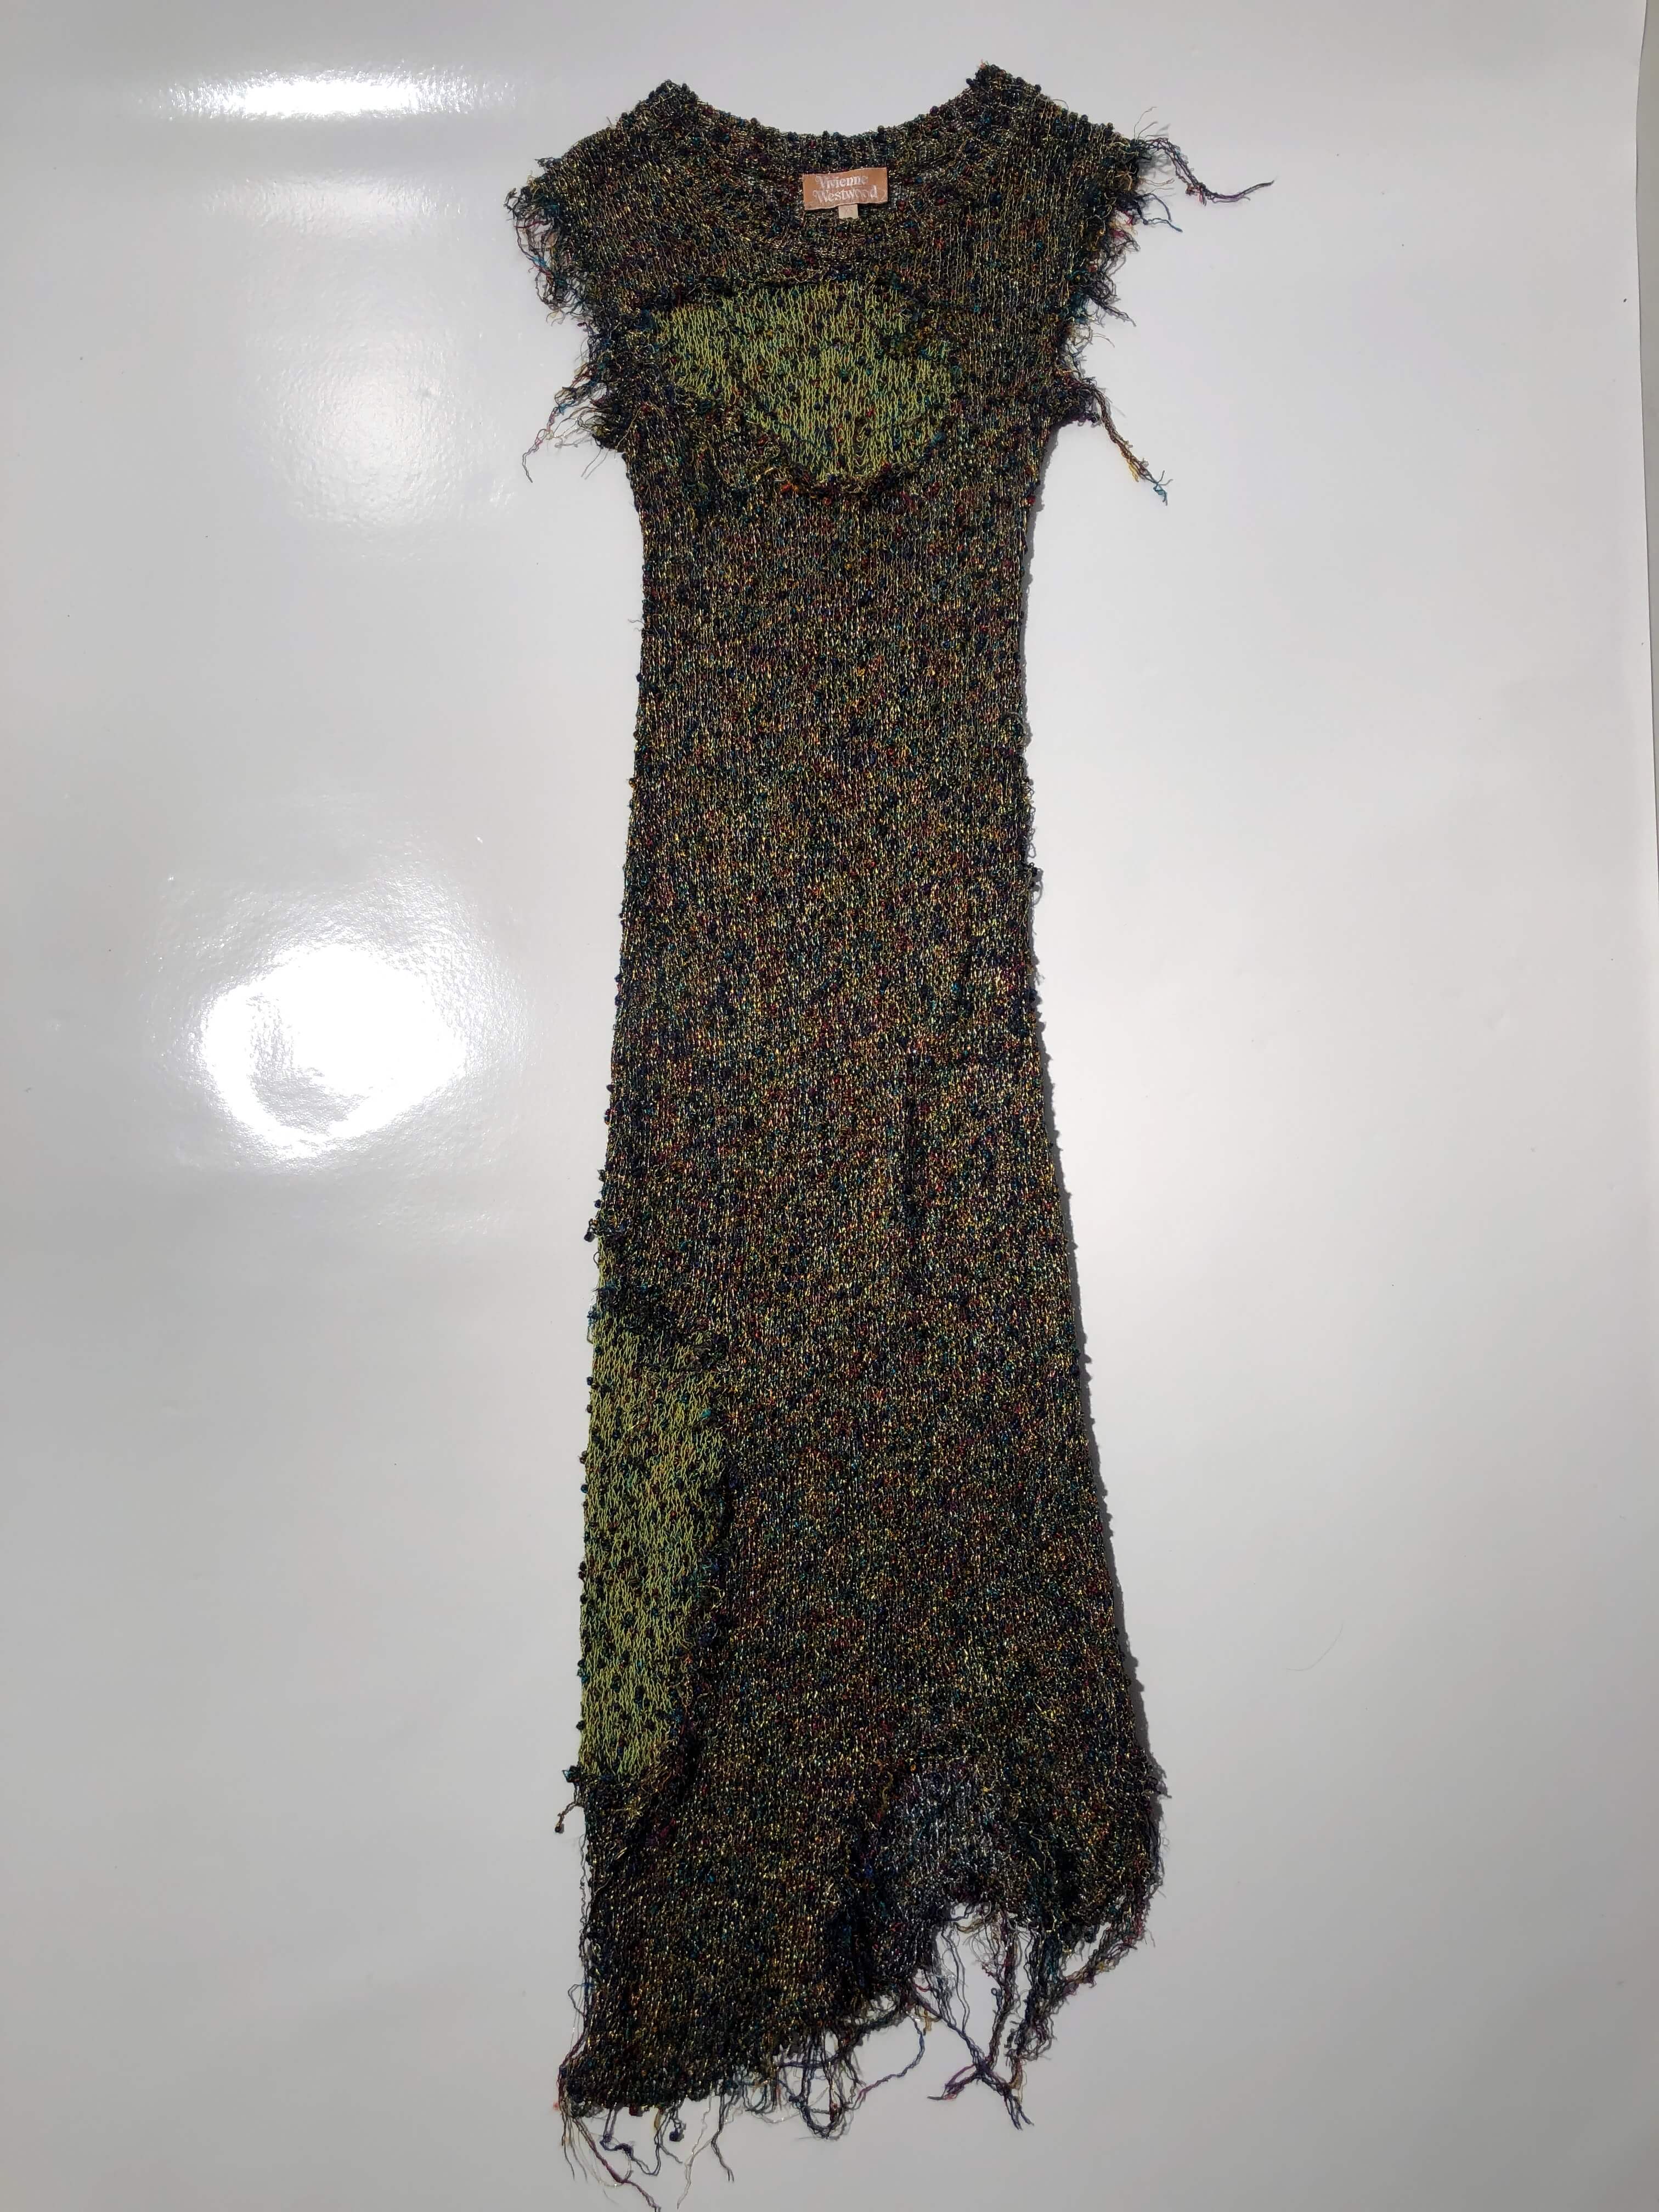 vivienne westwood gold label 2013 s/s crochet dress